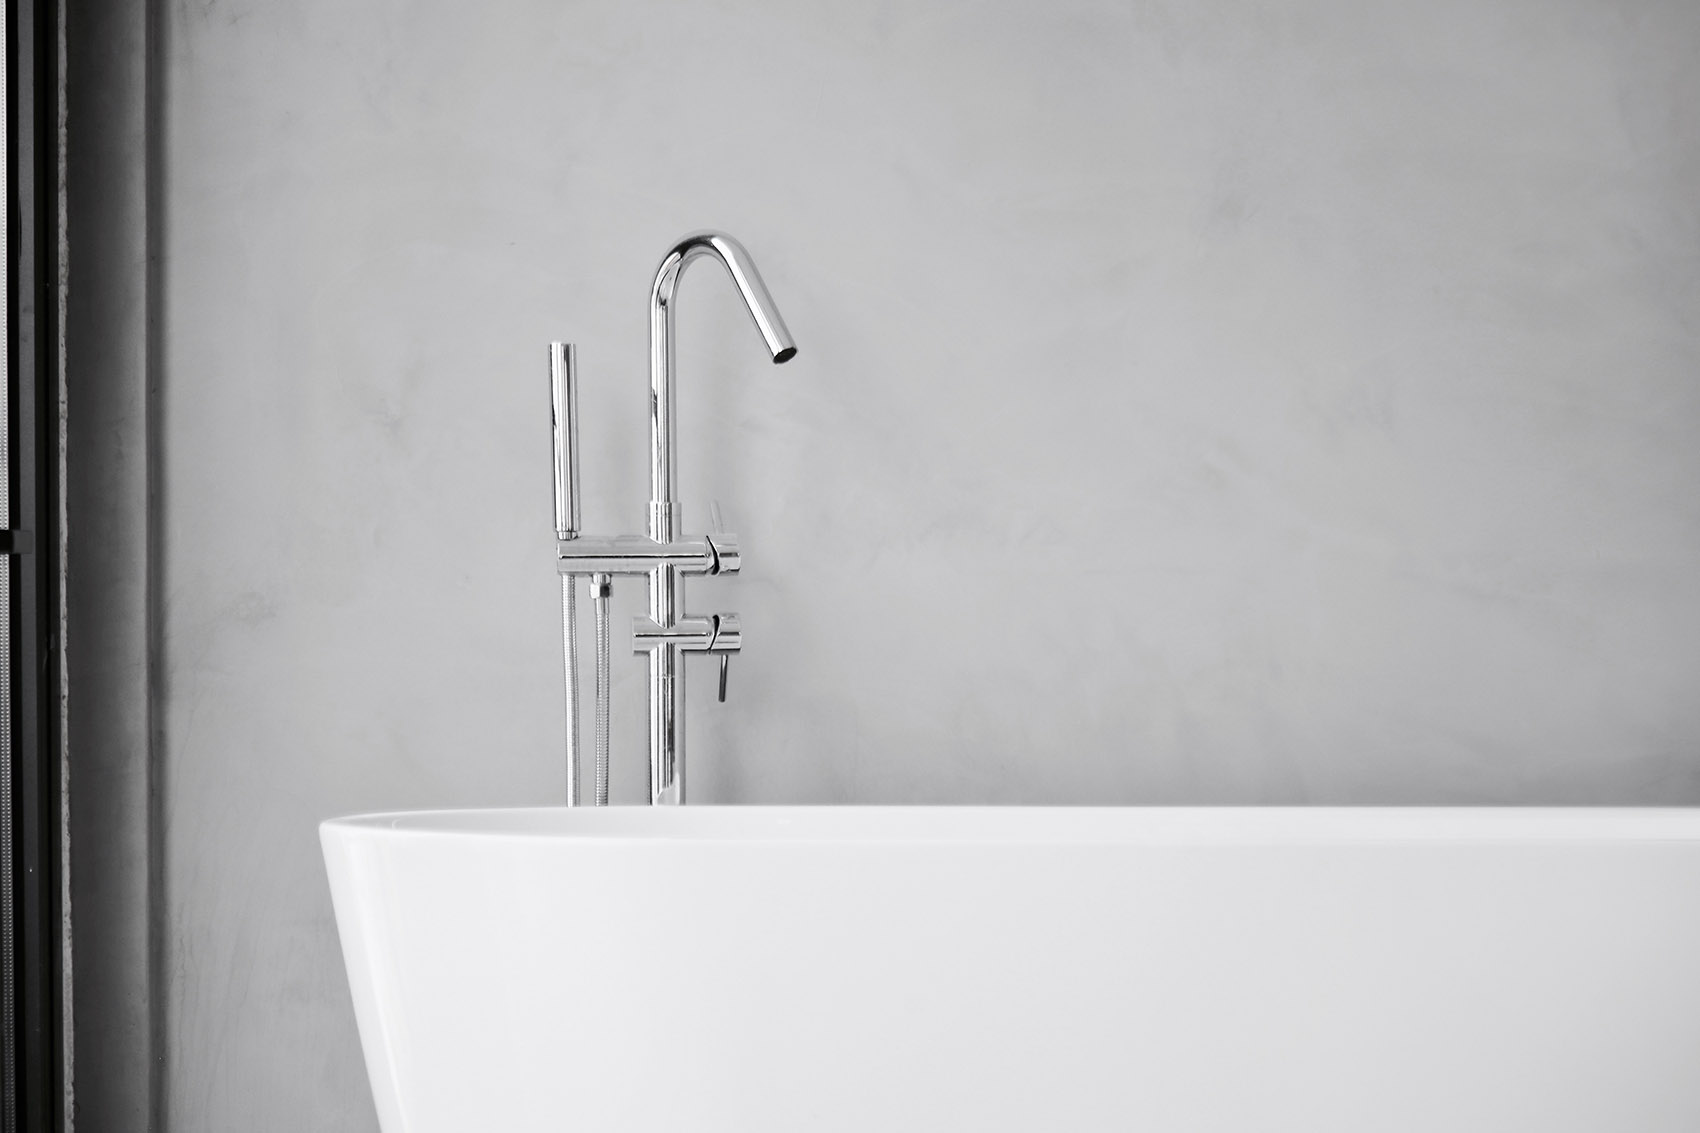 卫浴空间使用了浴缸，白色浴缸在灰色背景下，个性十足，清新自然。 